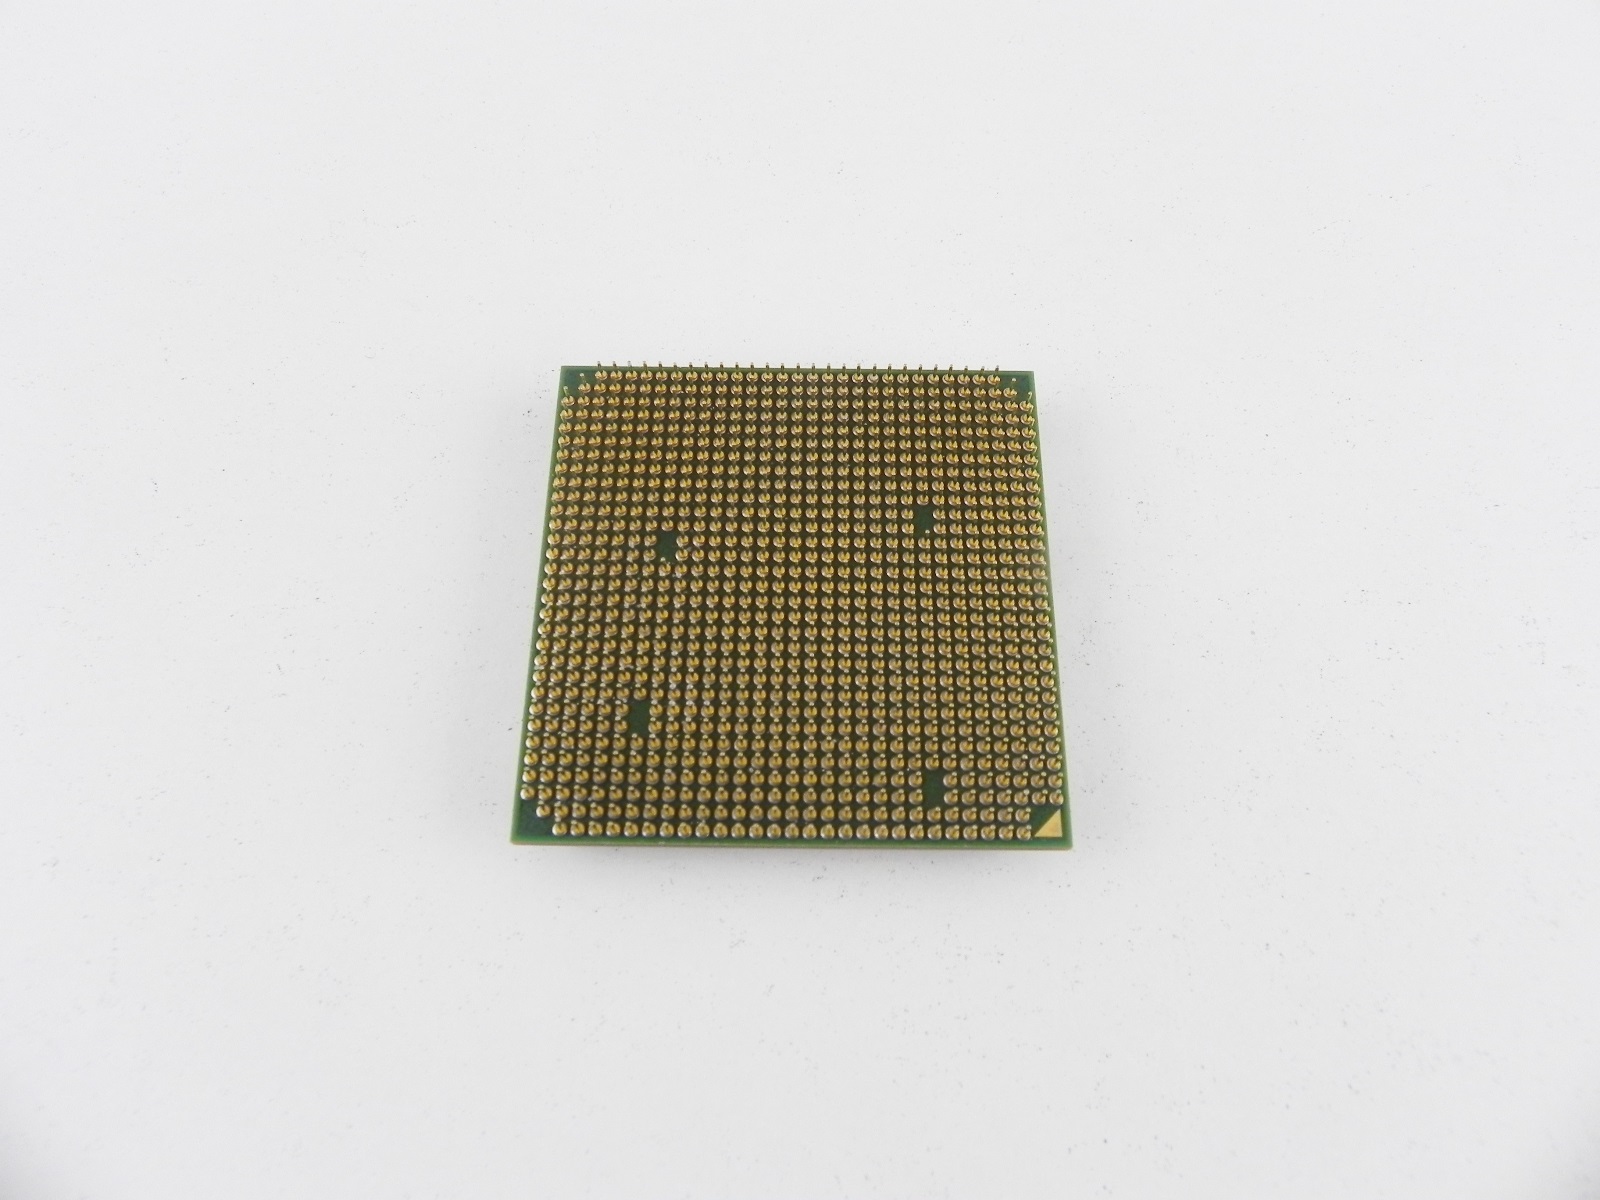 Athlon x2 сокет. Sempron процессор Socket am2. Процессора AMD Athlon 64 x2 Dual Core Processor 5000+. Процессор AMD Sempron 2650. Sempron Athlon 64.